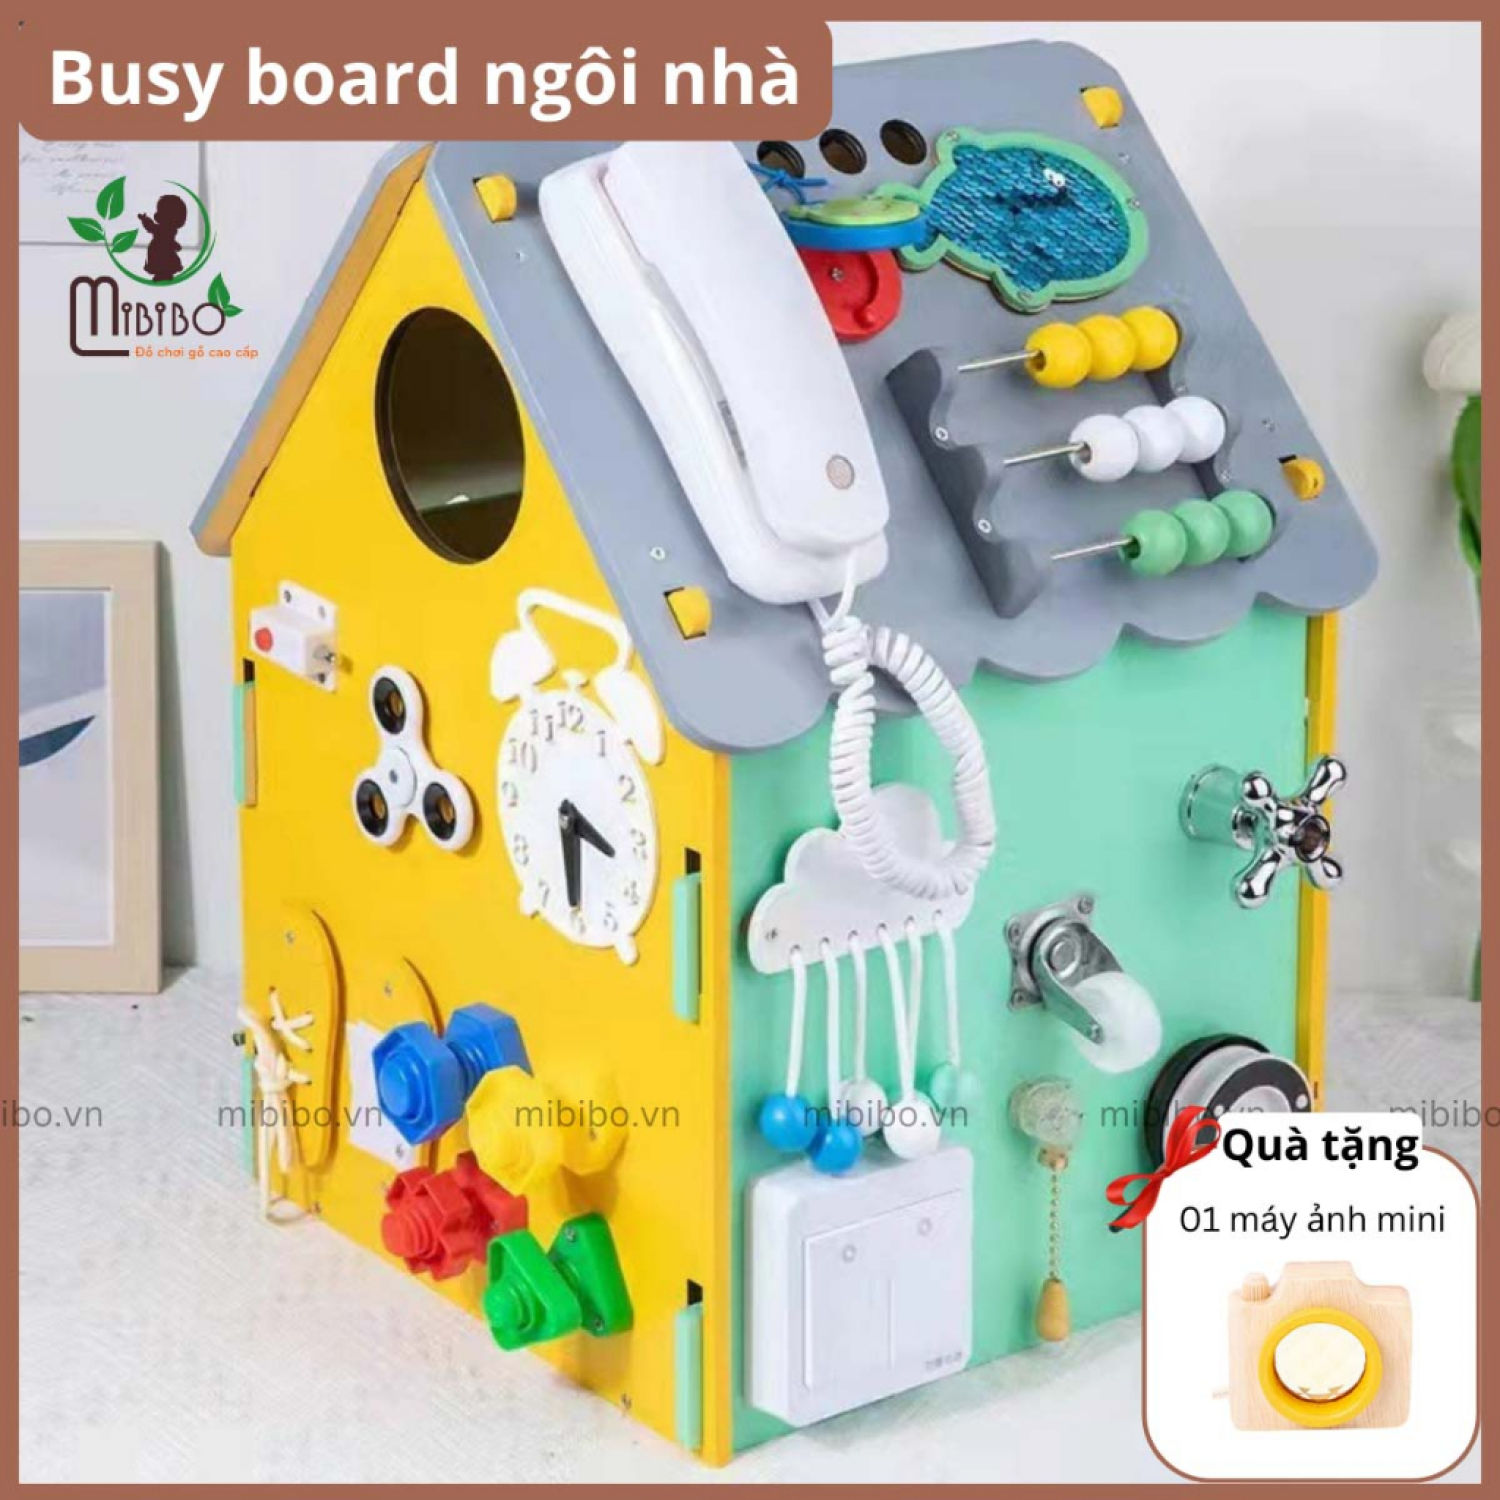 Bảng bận rộn, busy board hình ngôi nhà Mibibo.vn, đồ chơi trí tuệ